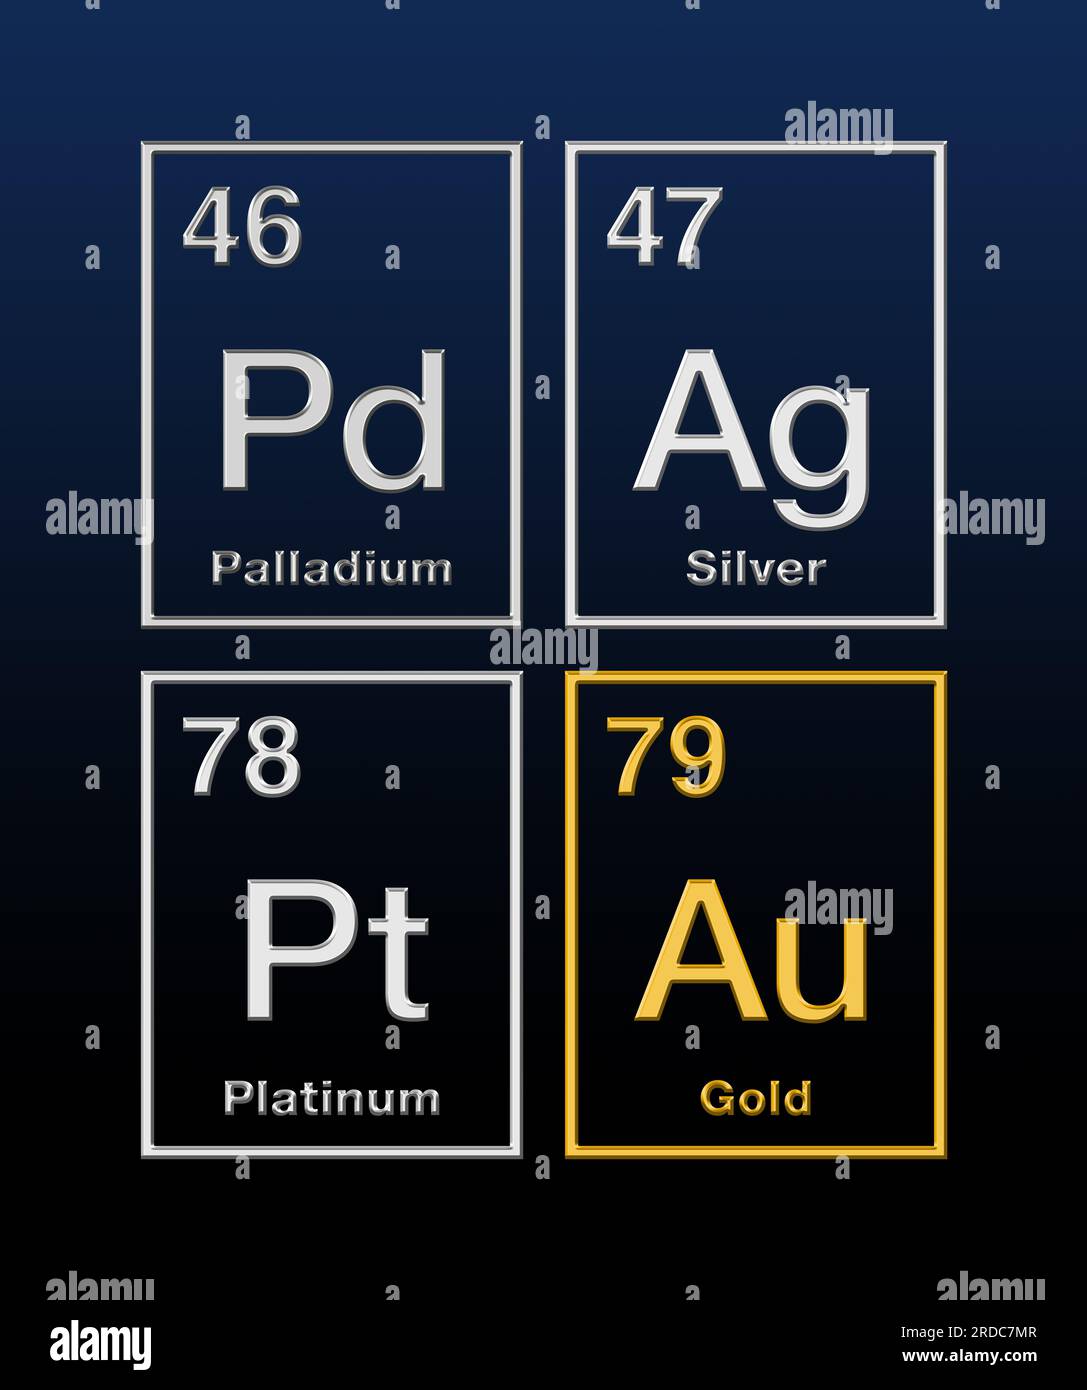 Métaux précieux or, argent, platine et palladium, de la classification périodique, avec numéros atomiques et relief en forme. Eléments chimiques. Banque D'Images